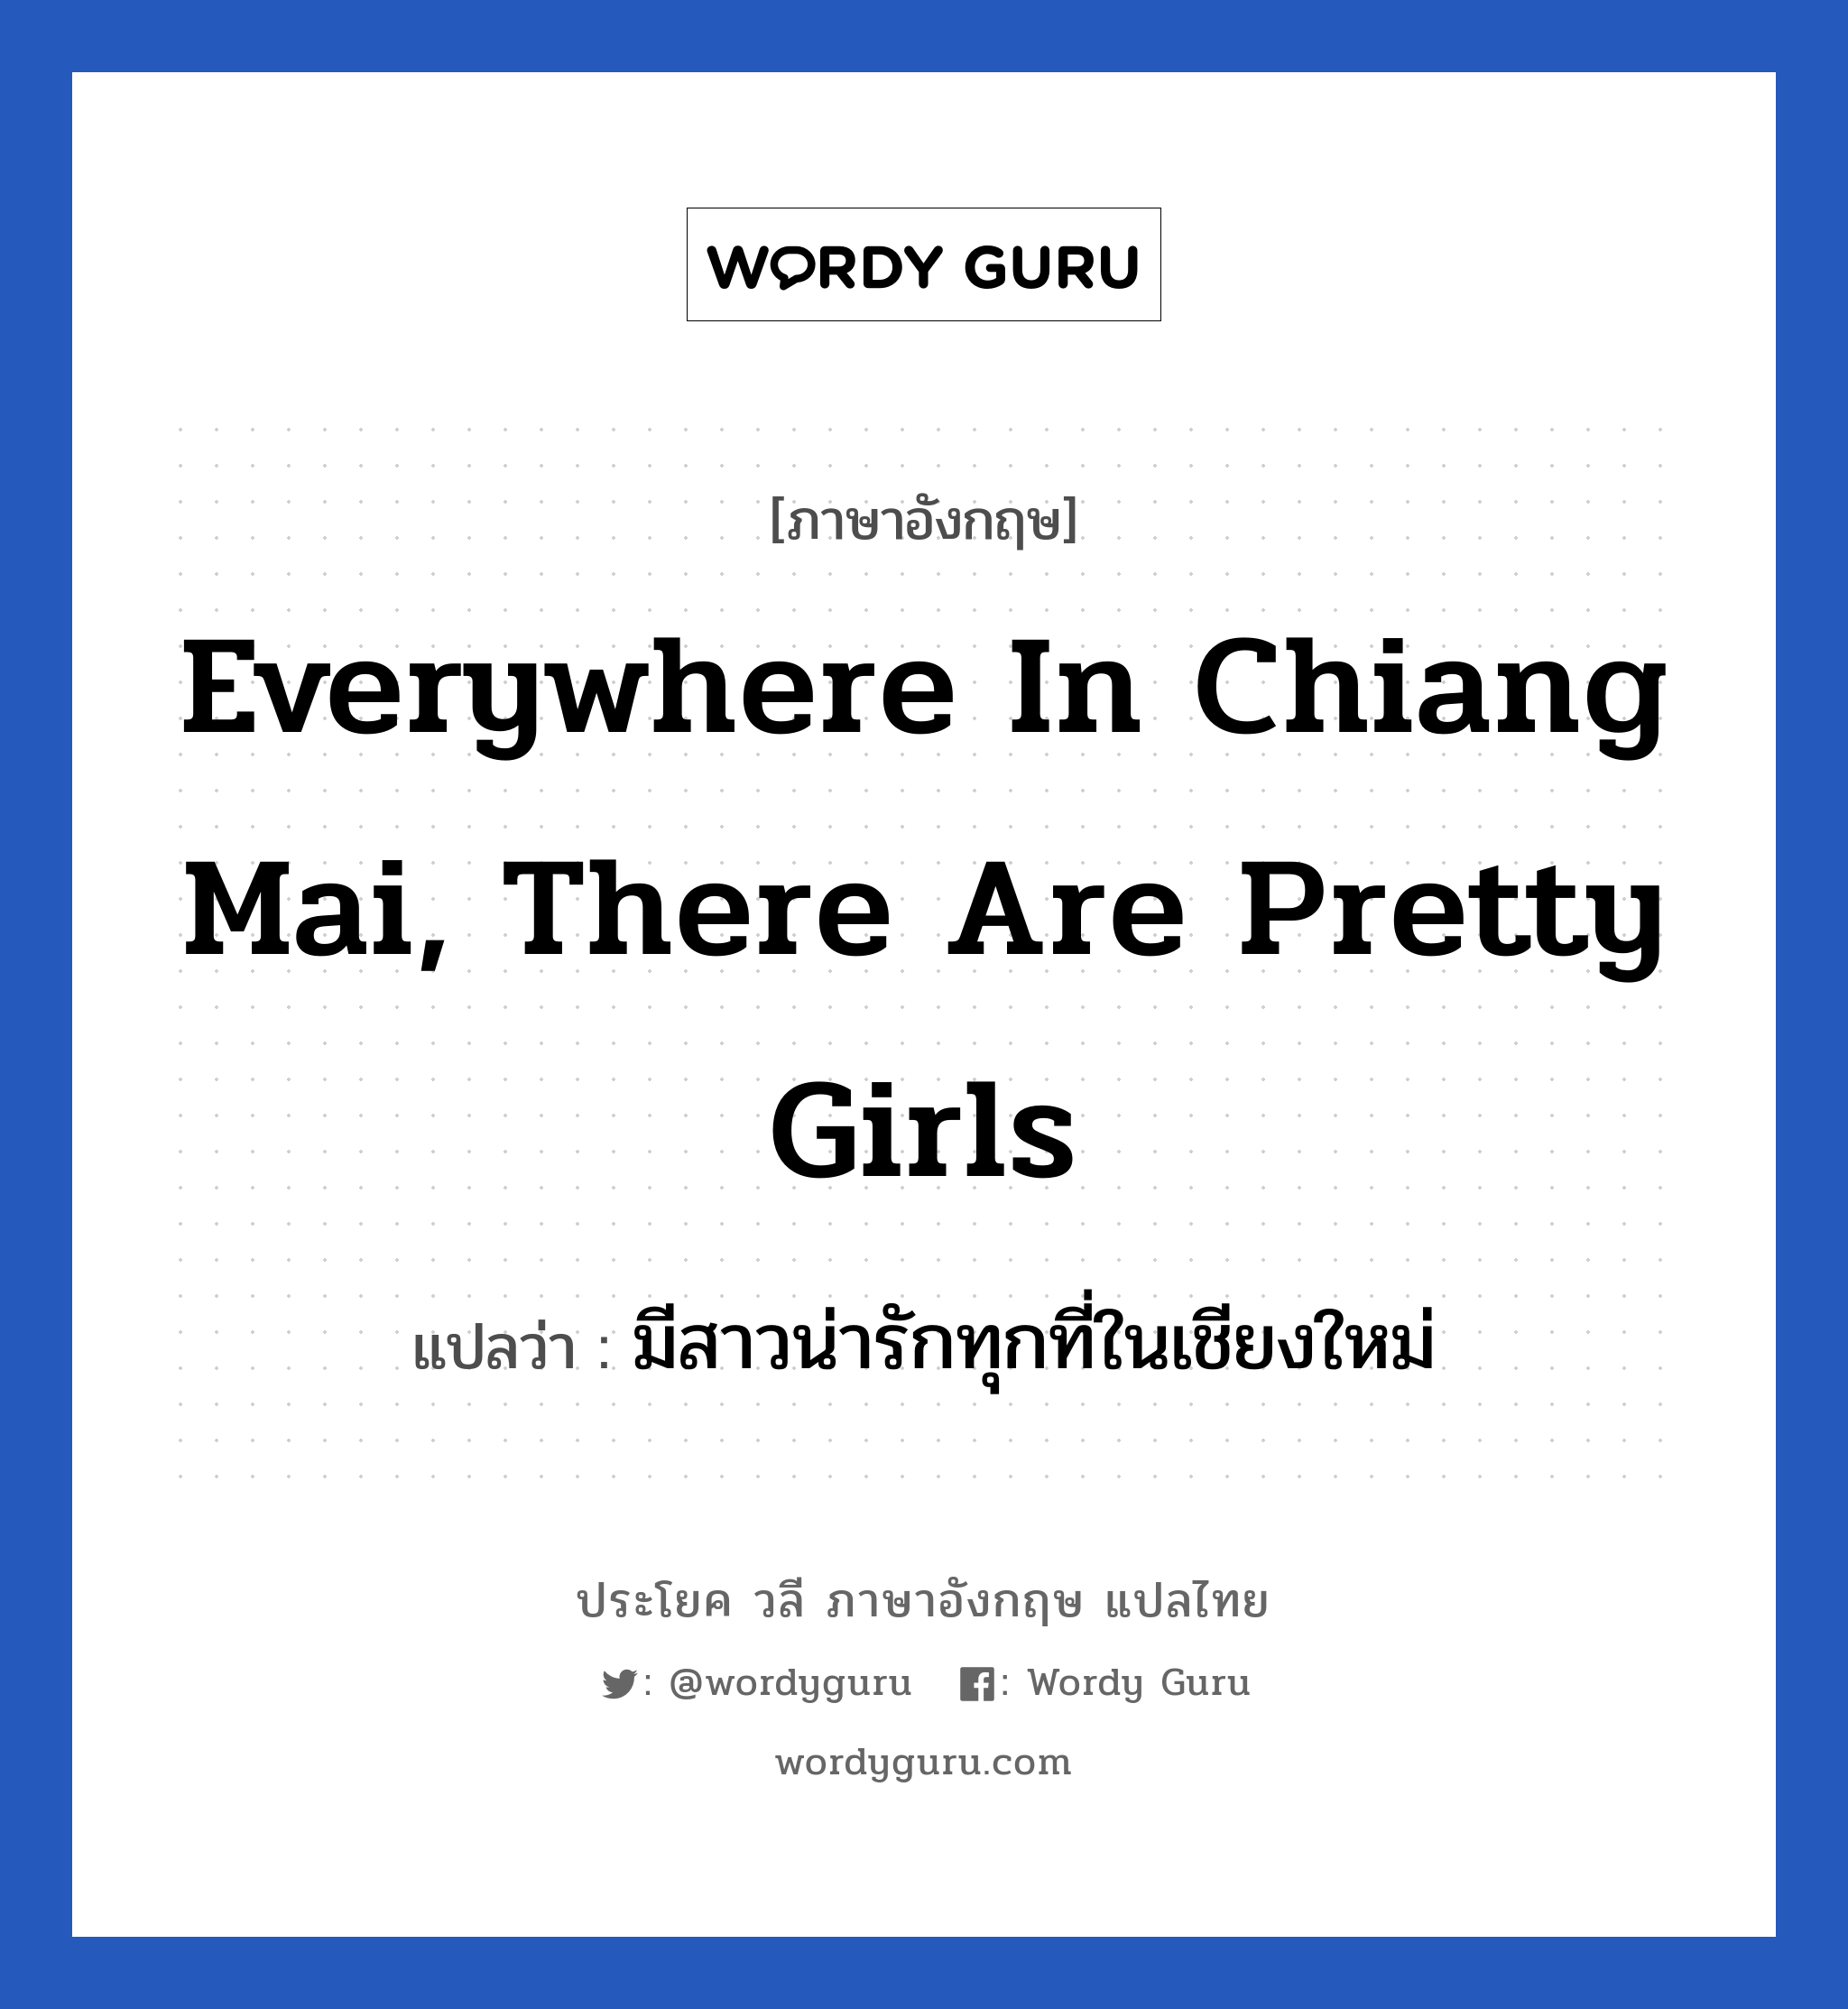 มีสาวน่ารักทุกที่ในเชียงใหม่ ภาษาอังกฤษ?, วลีภาษาอังกฤษ มีสาวน่ารักทุกที่ในเชียงใหม่ แปลว่า Everywhere in Chiang Mai, there are pretty girls